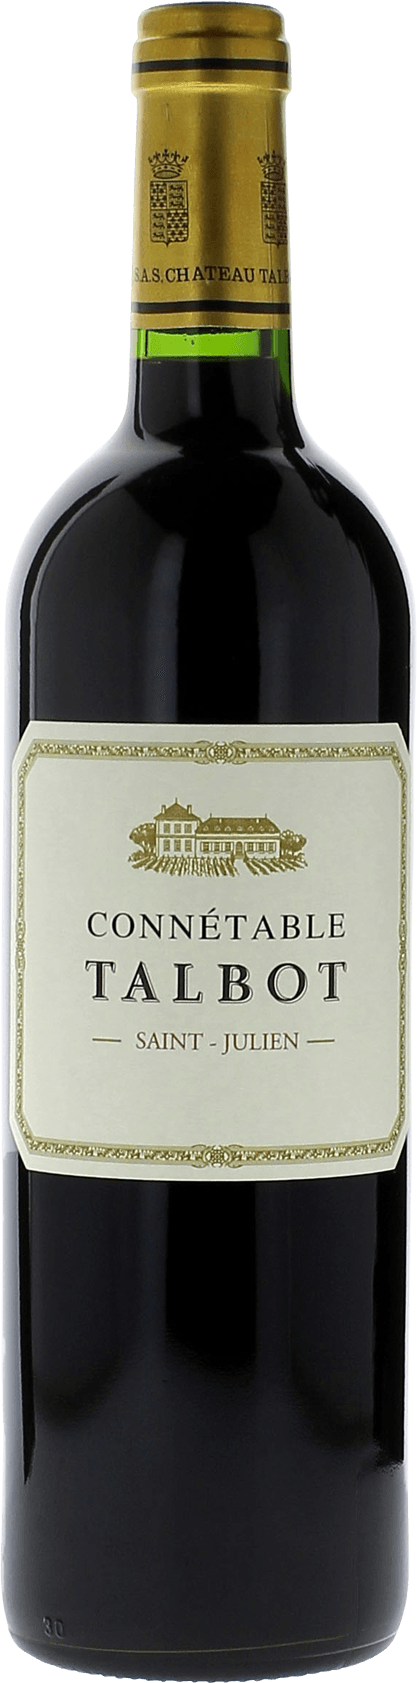 Connetable talbot 2016 2me vin de TALBOT Saint-Julien, Bordeaux rouge